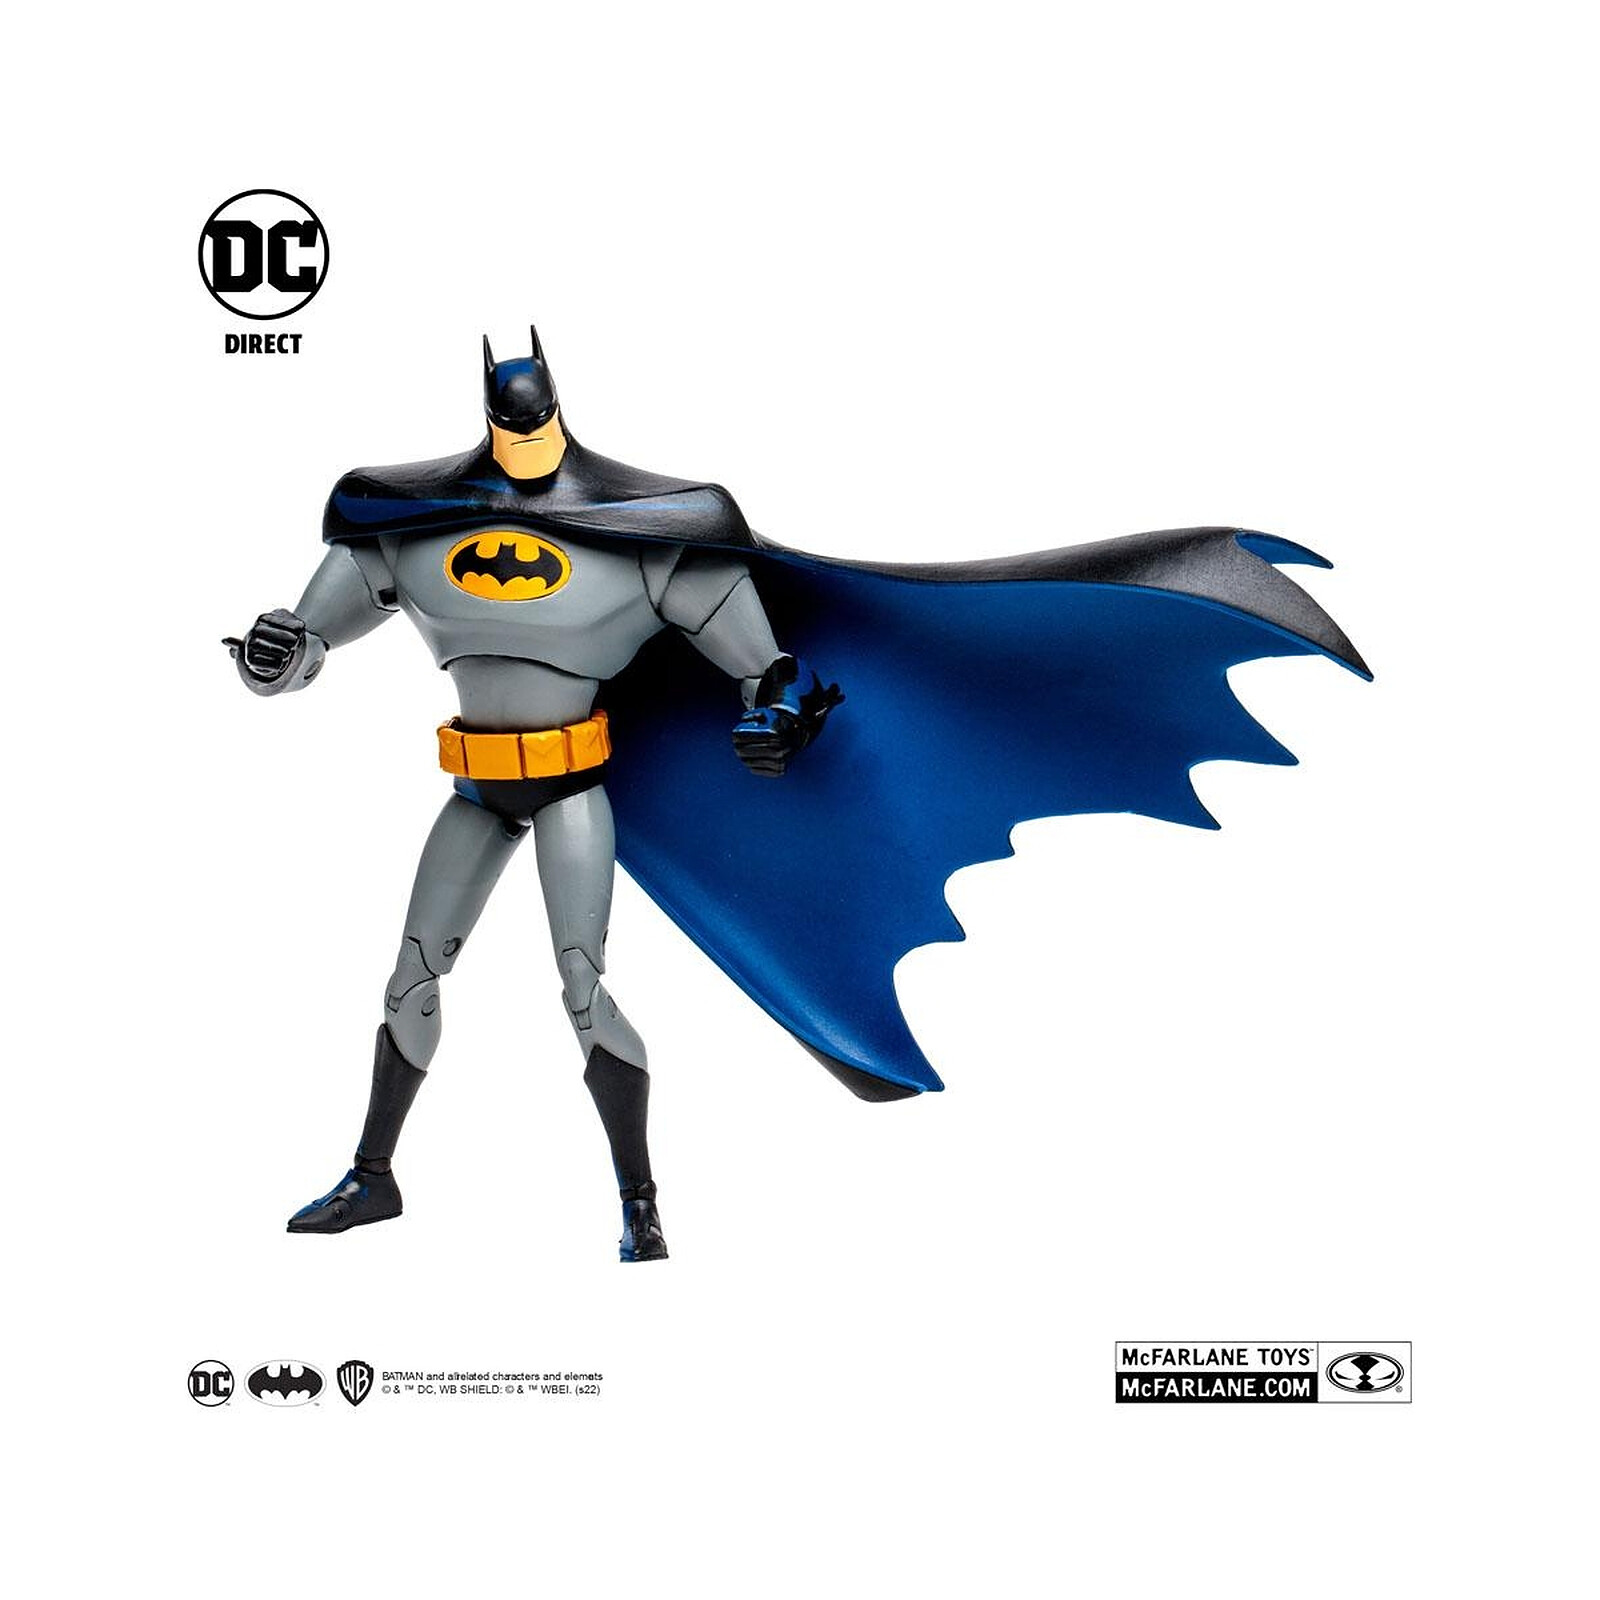 Figurine articulée Mcfarlane toys DC Multiverse figurine Batman